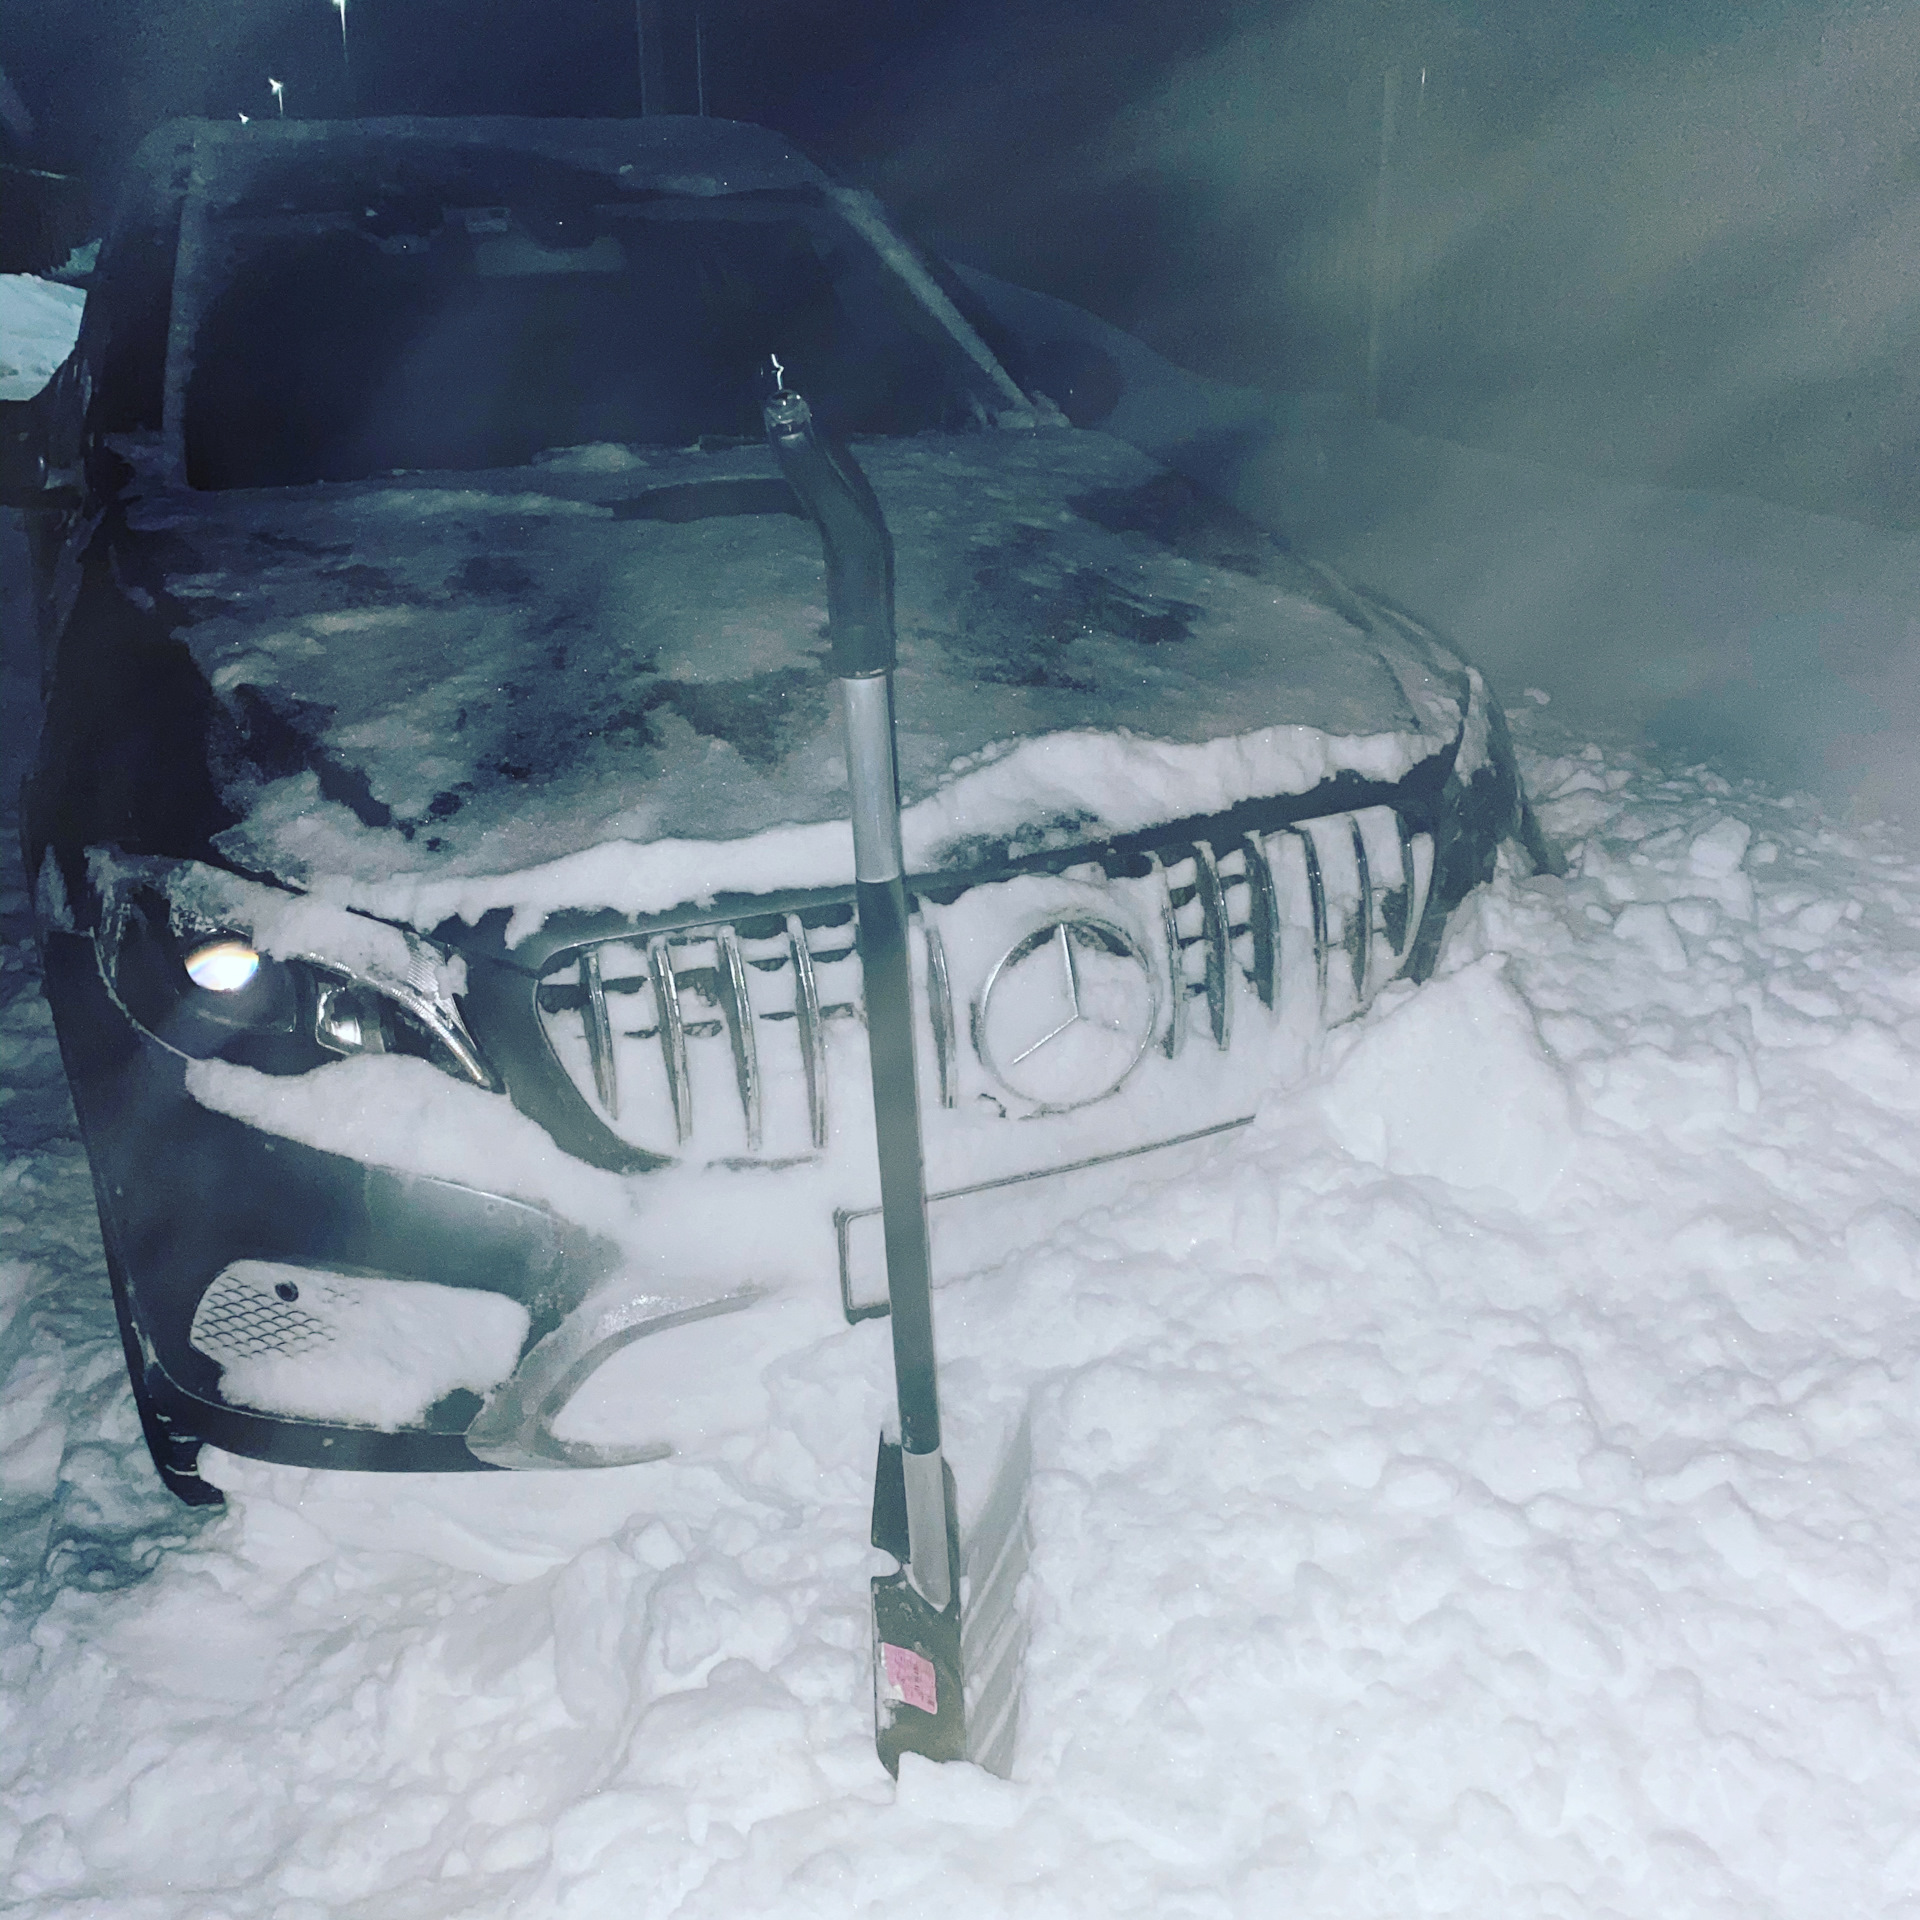 Снежок номер 2. Автомобиль застрял в снегу. Машина застряла в сугробе. Машина застряла в снегу ночью. Автомобиль застрял в сугробе.